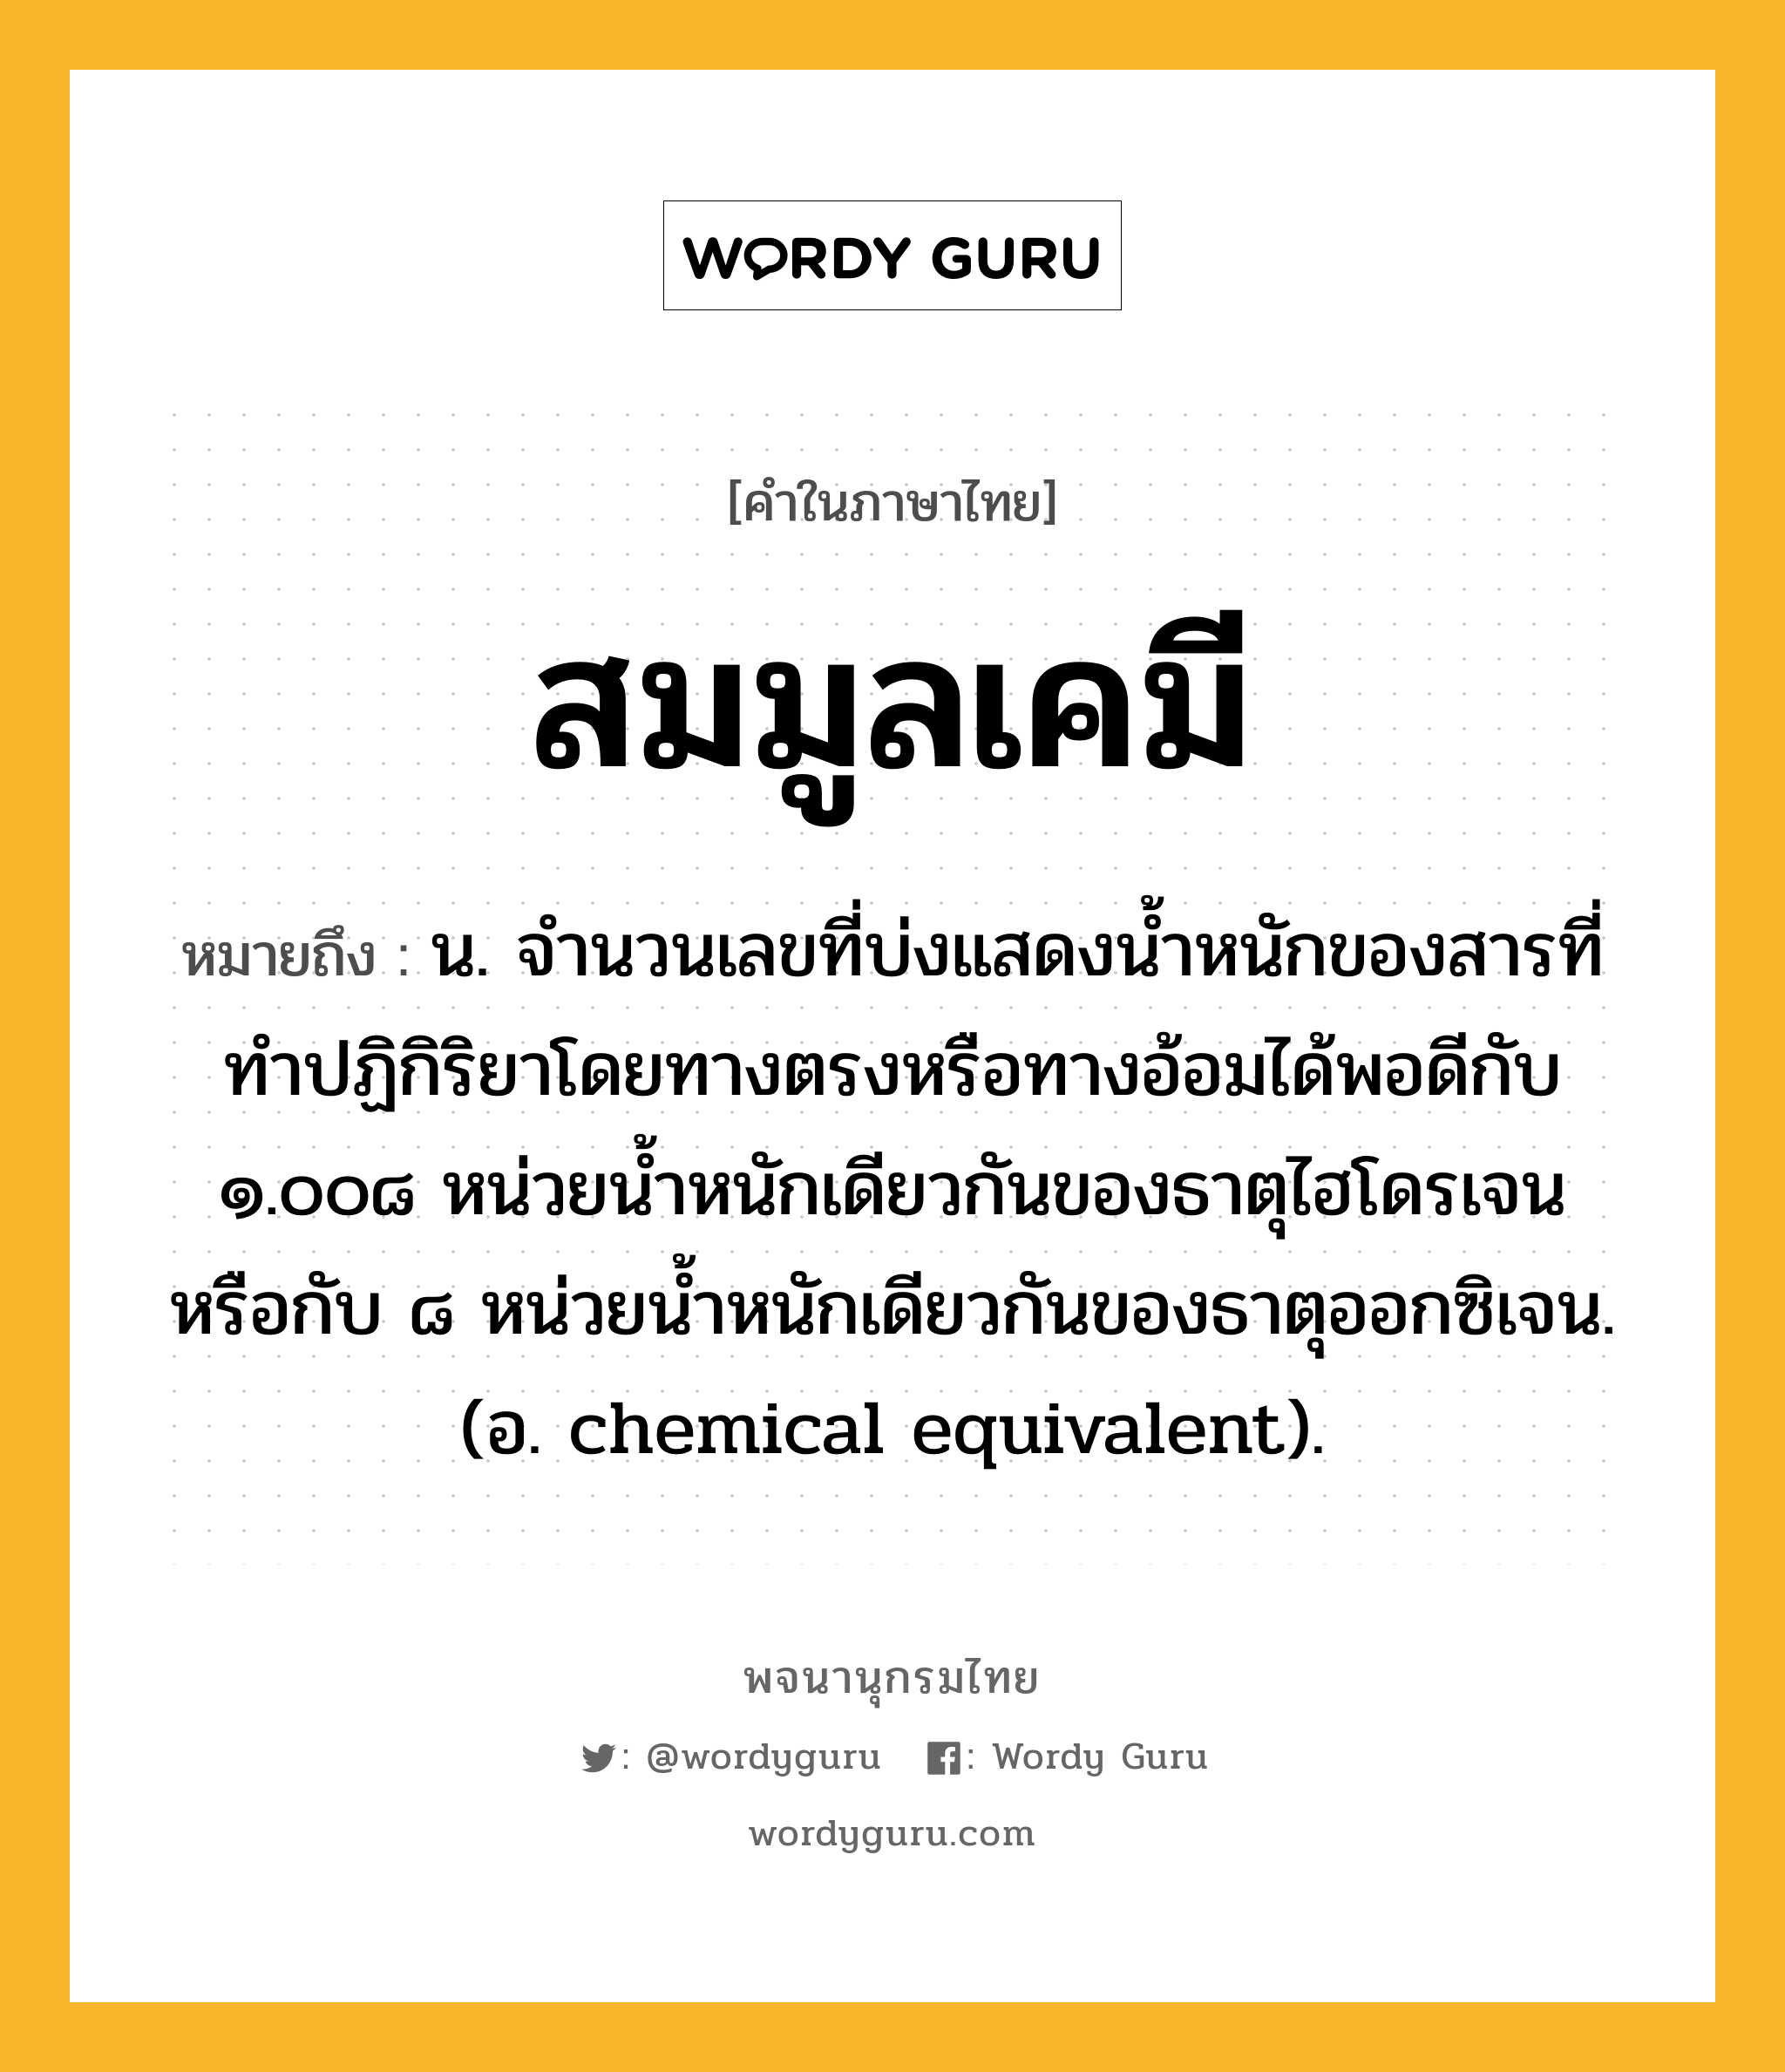 สมมูลเคมี ความหมาย หมายถึงอะไร?, คำในภาษาไทย สมมูลเคมี หมายถึง น. จํานวนเลขที่บ่งแสดงนํ้าหนักของสารที่ทําปฏิกิริยาโดยทางตรงหรือทางอ้อมได้พอดีกับ ๑.๐๐๘ หน่วยนํ้าหนักเดียวกันของธาตุไฮโดรเจน หรือกับ ๘ หน่วยนํ้าหนักเดียวกันของธาตุออกซิเจน. (อ. chemical equivalent).